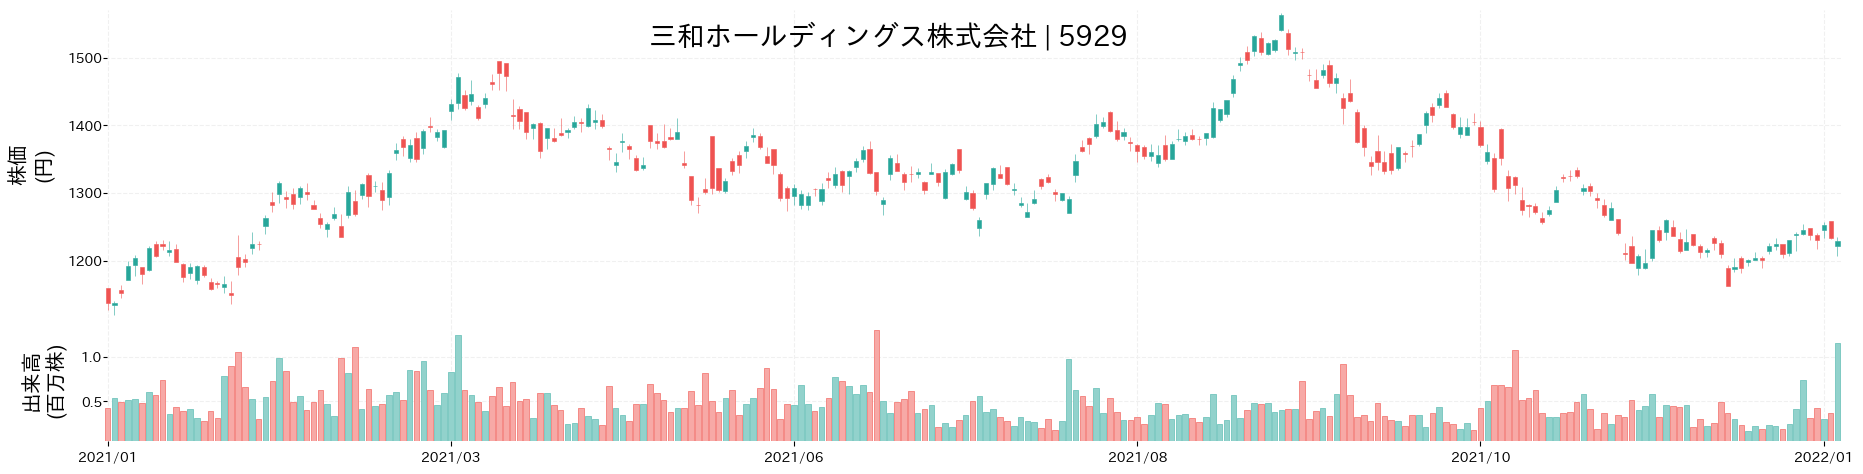 三和ホールディングスの株価推移(2021)